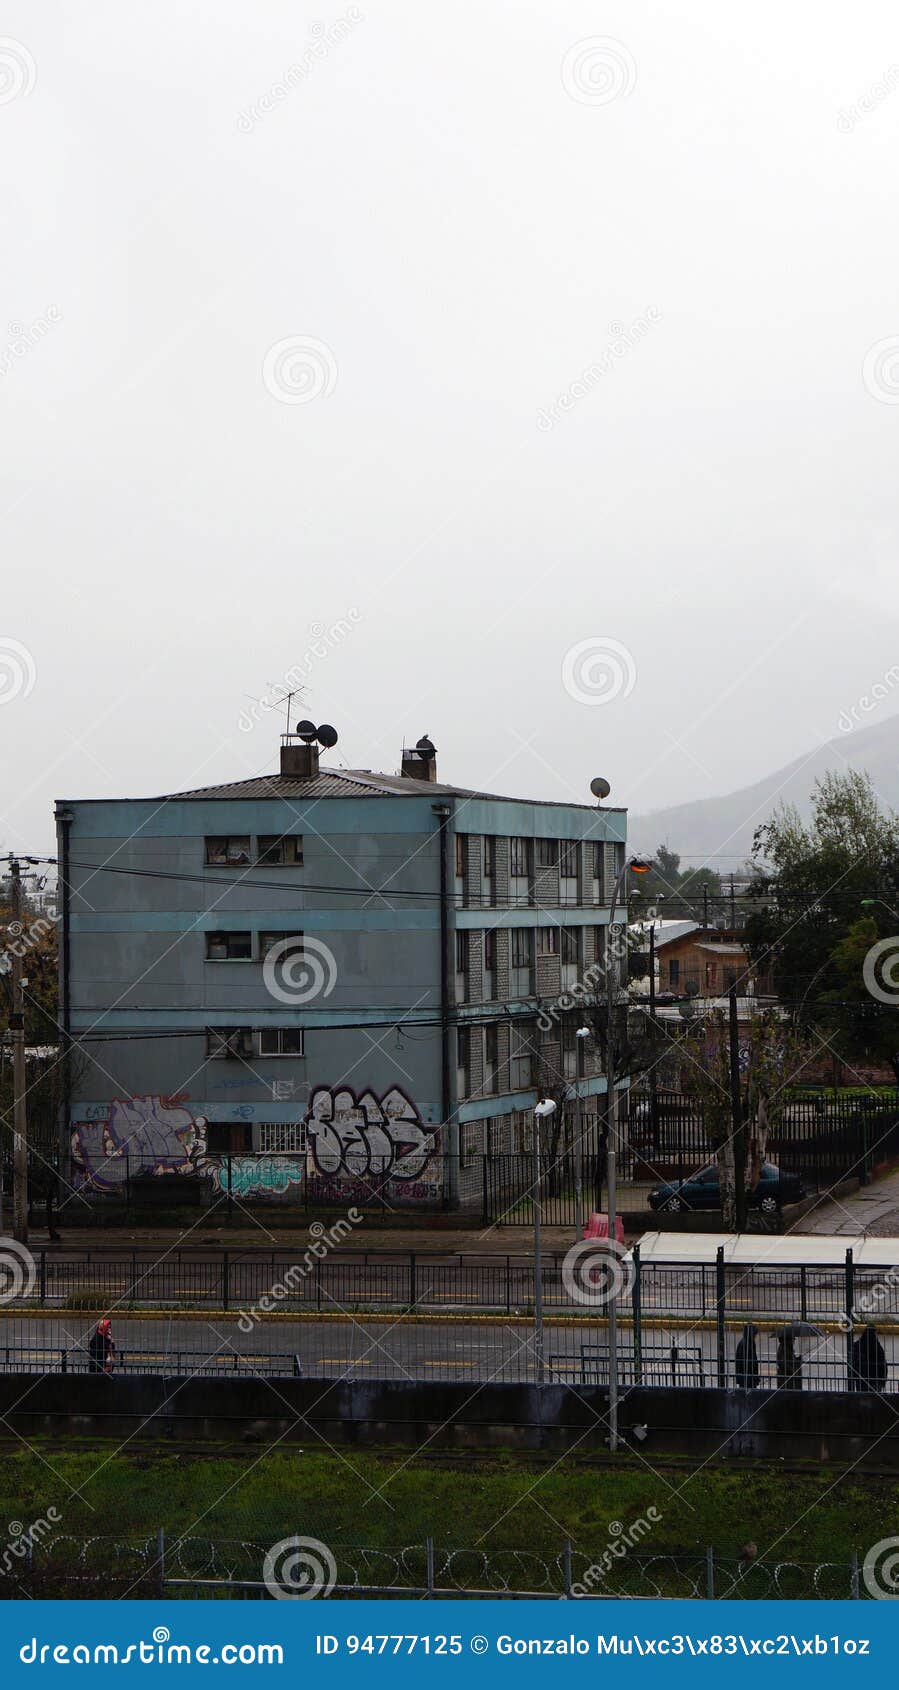 ghetto apartments